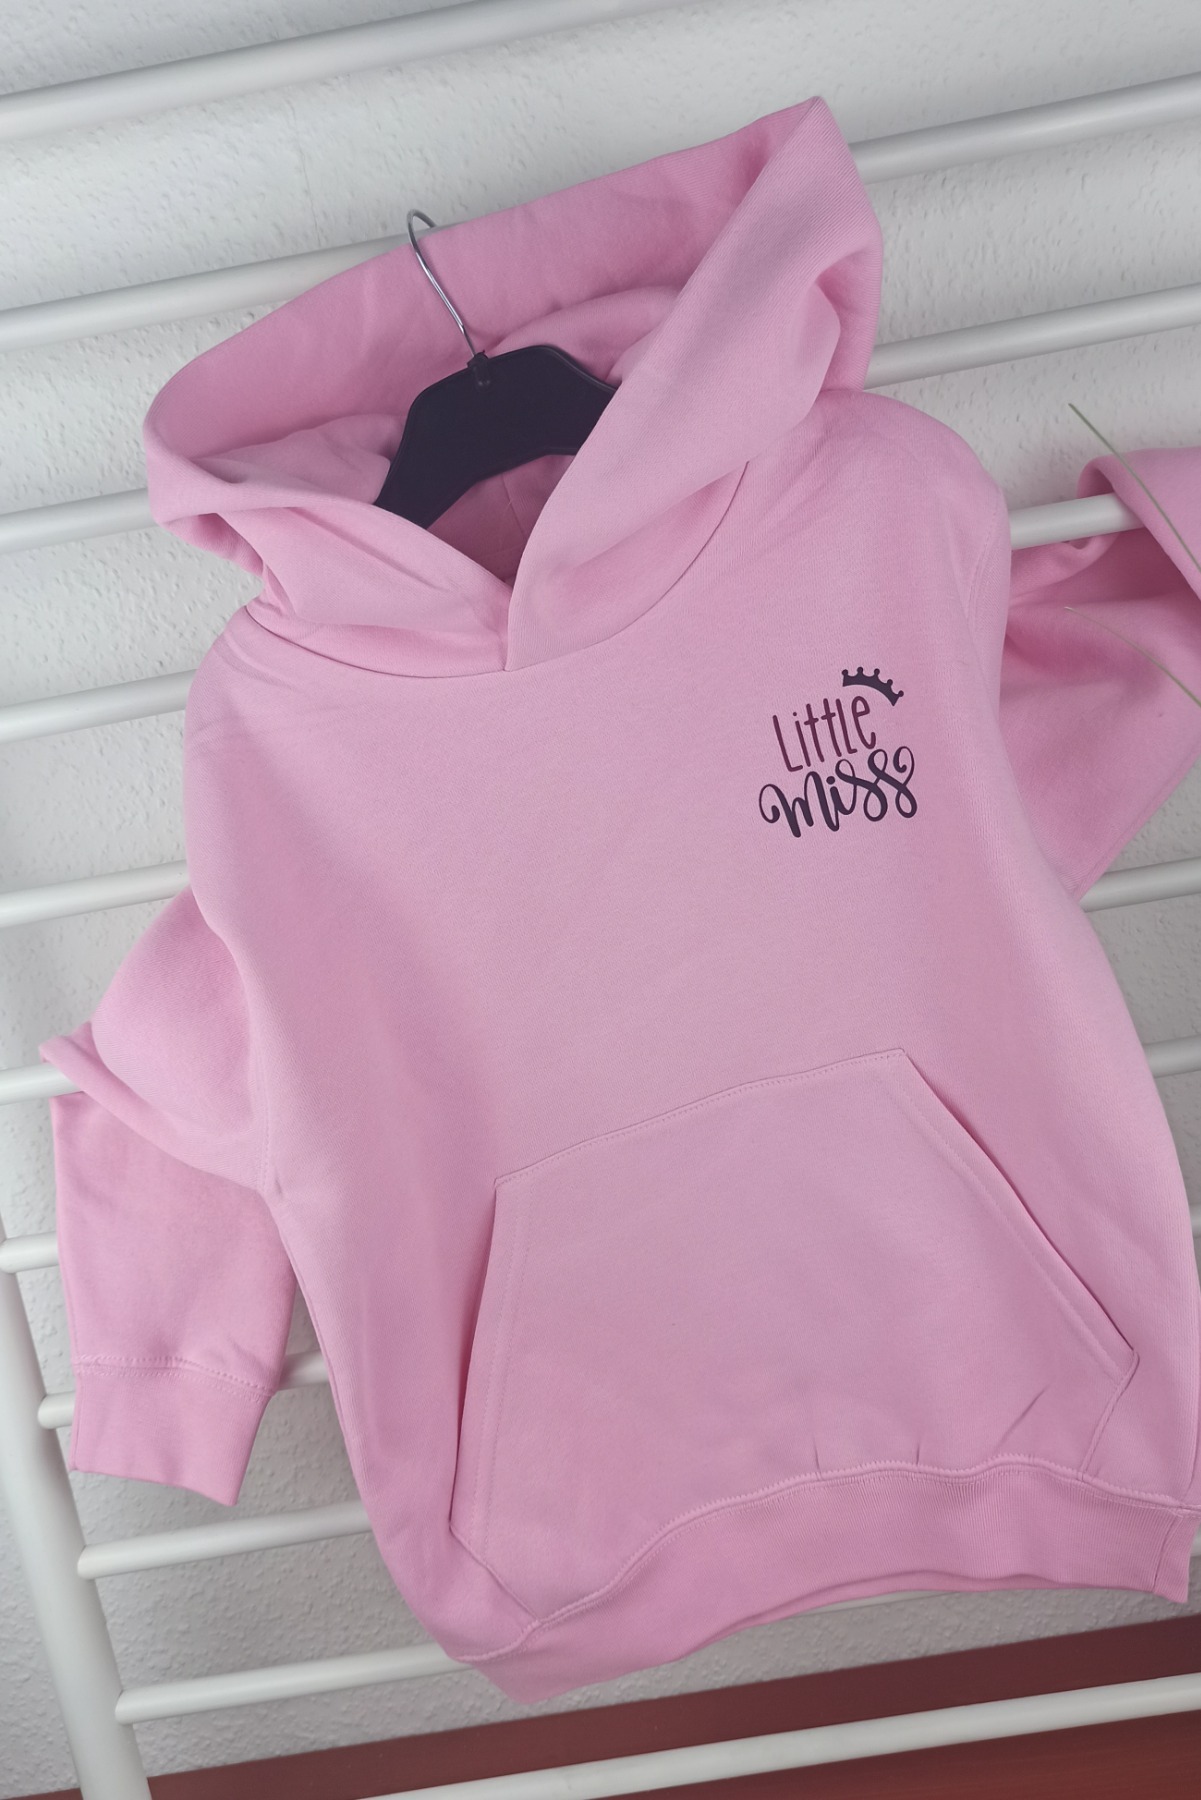 Sofortkauf bedruckter Hoodie in rosa für Mädchen Little Miss Gr 116 2